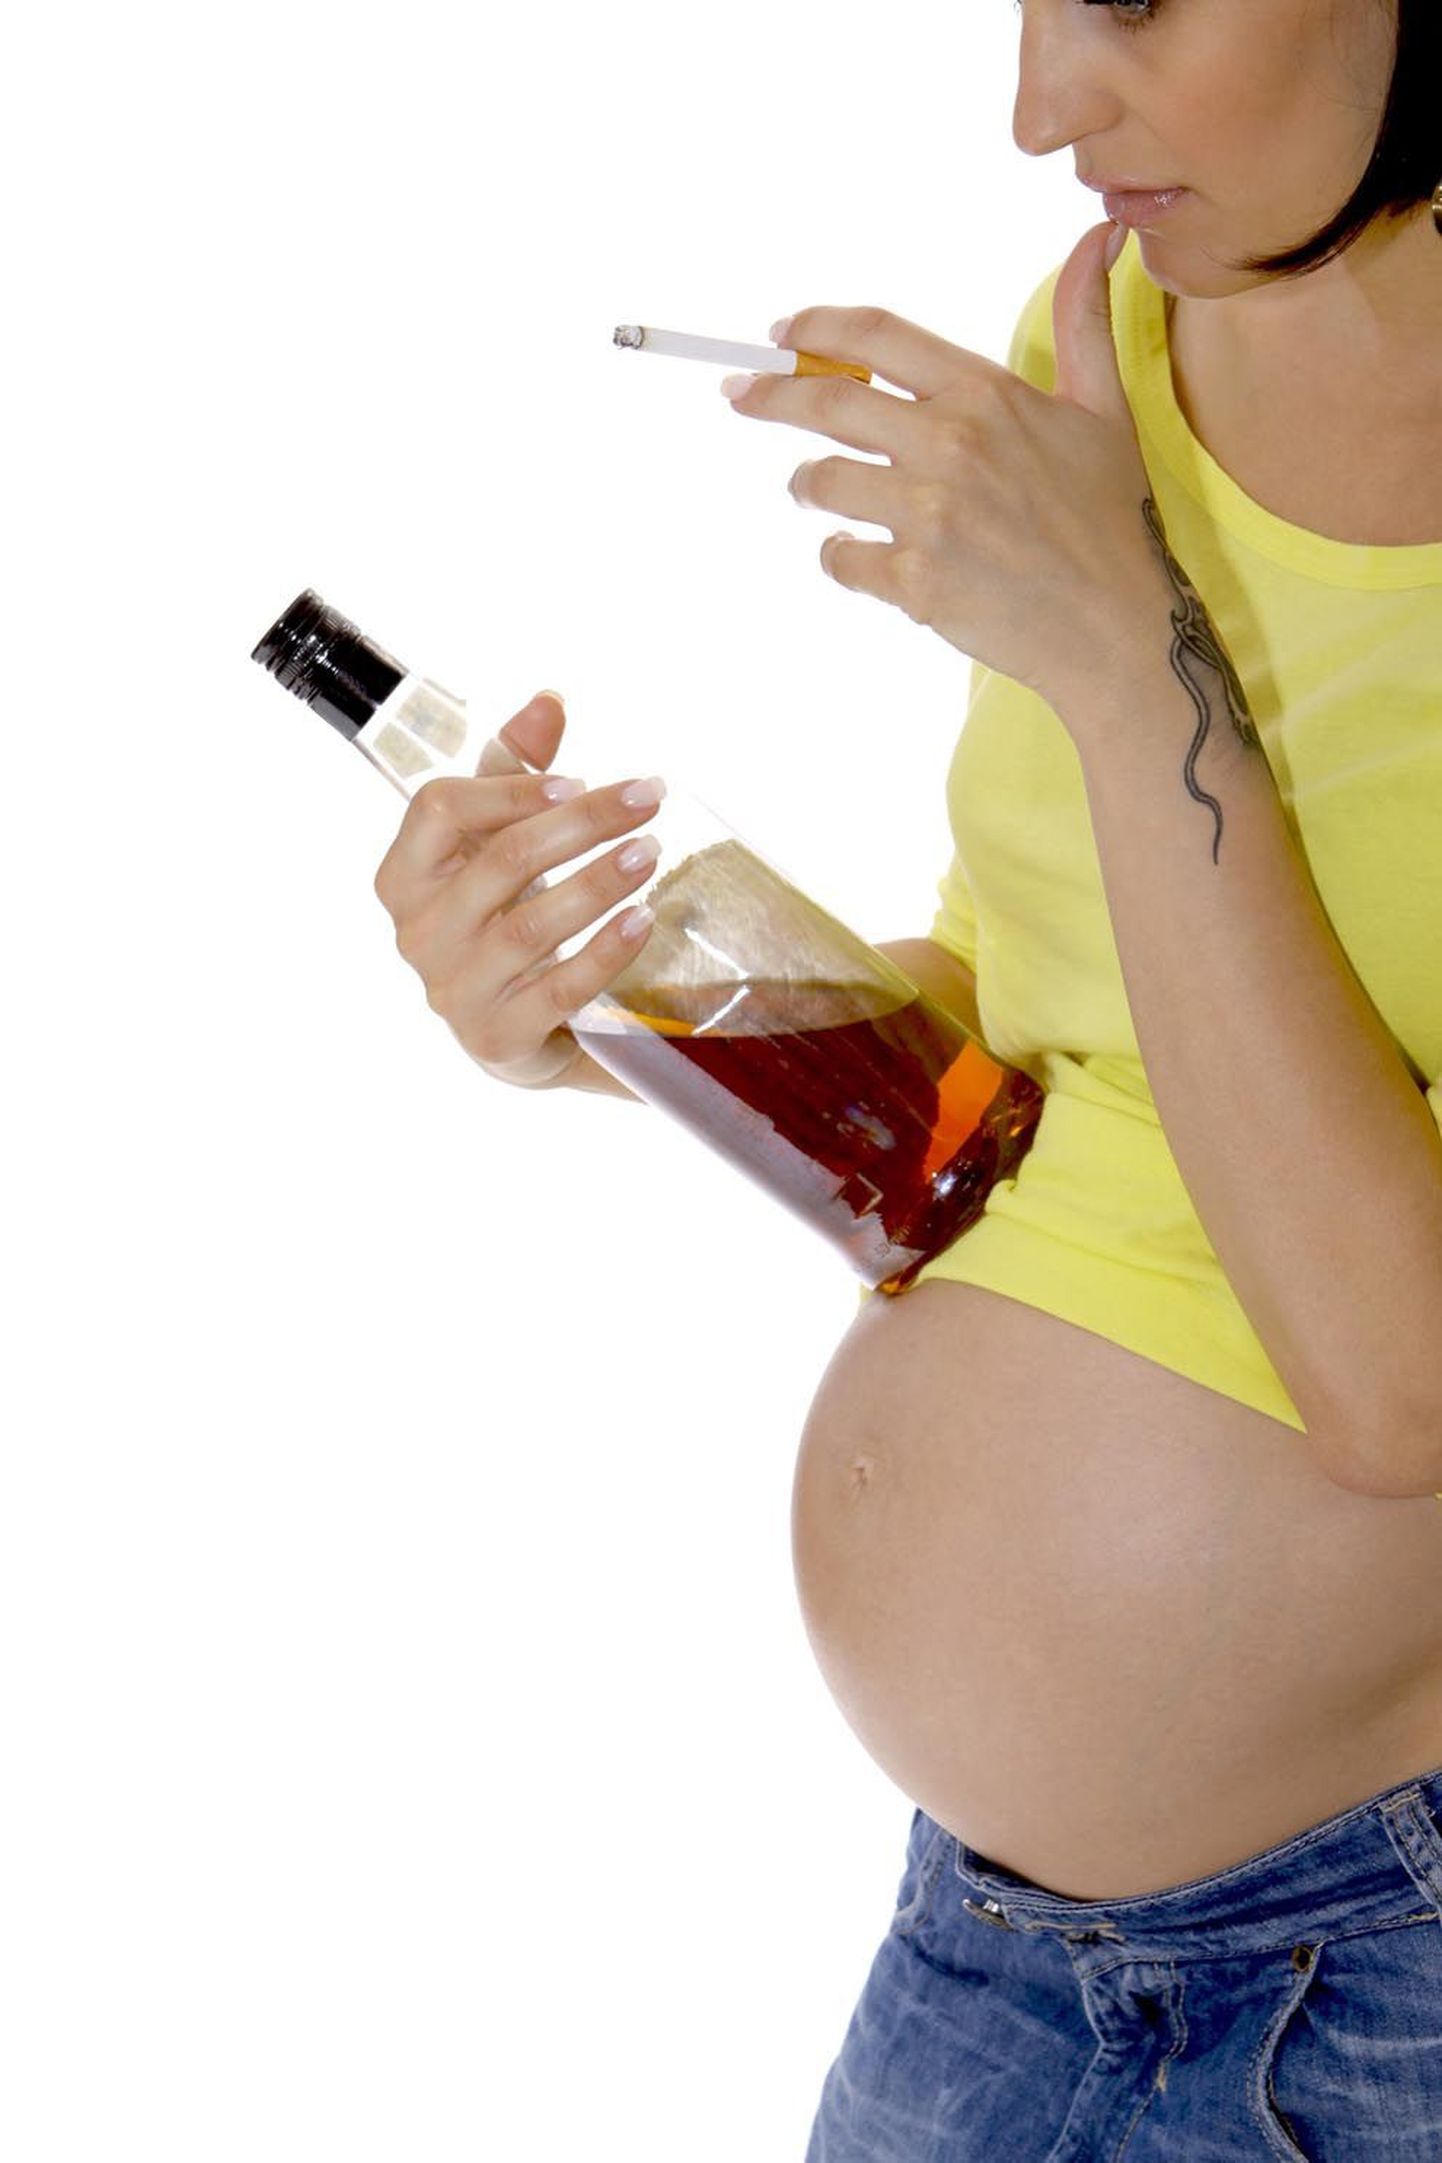 Raseduse ajal alkoholi tarvitada ja suitsetada tähendab seada tõsisesse ohtu lapse tervis.